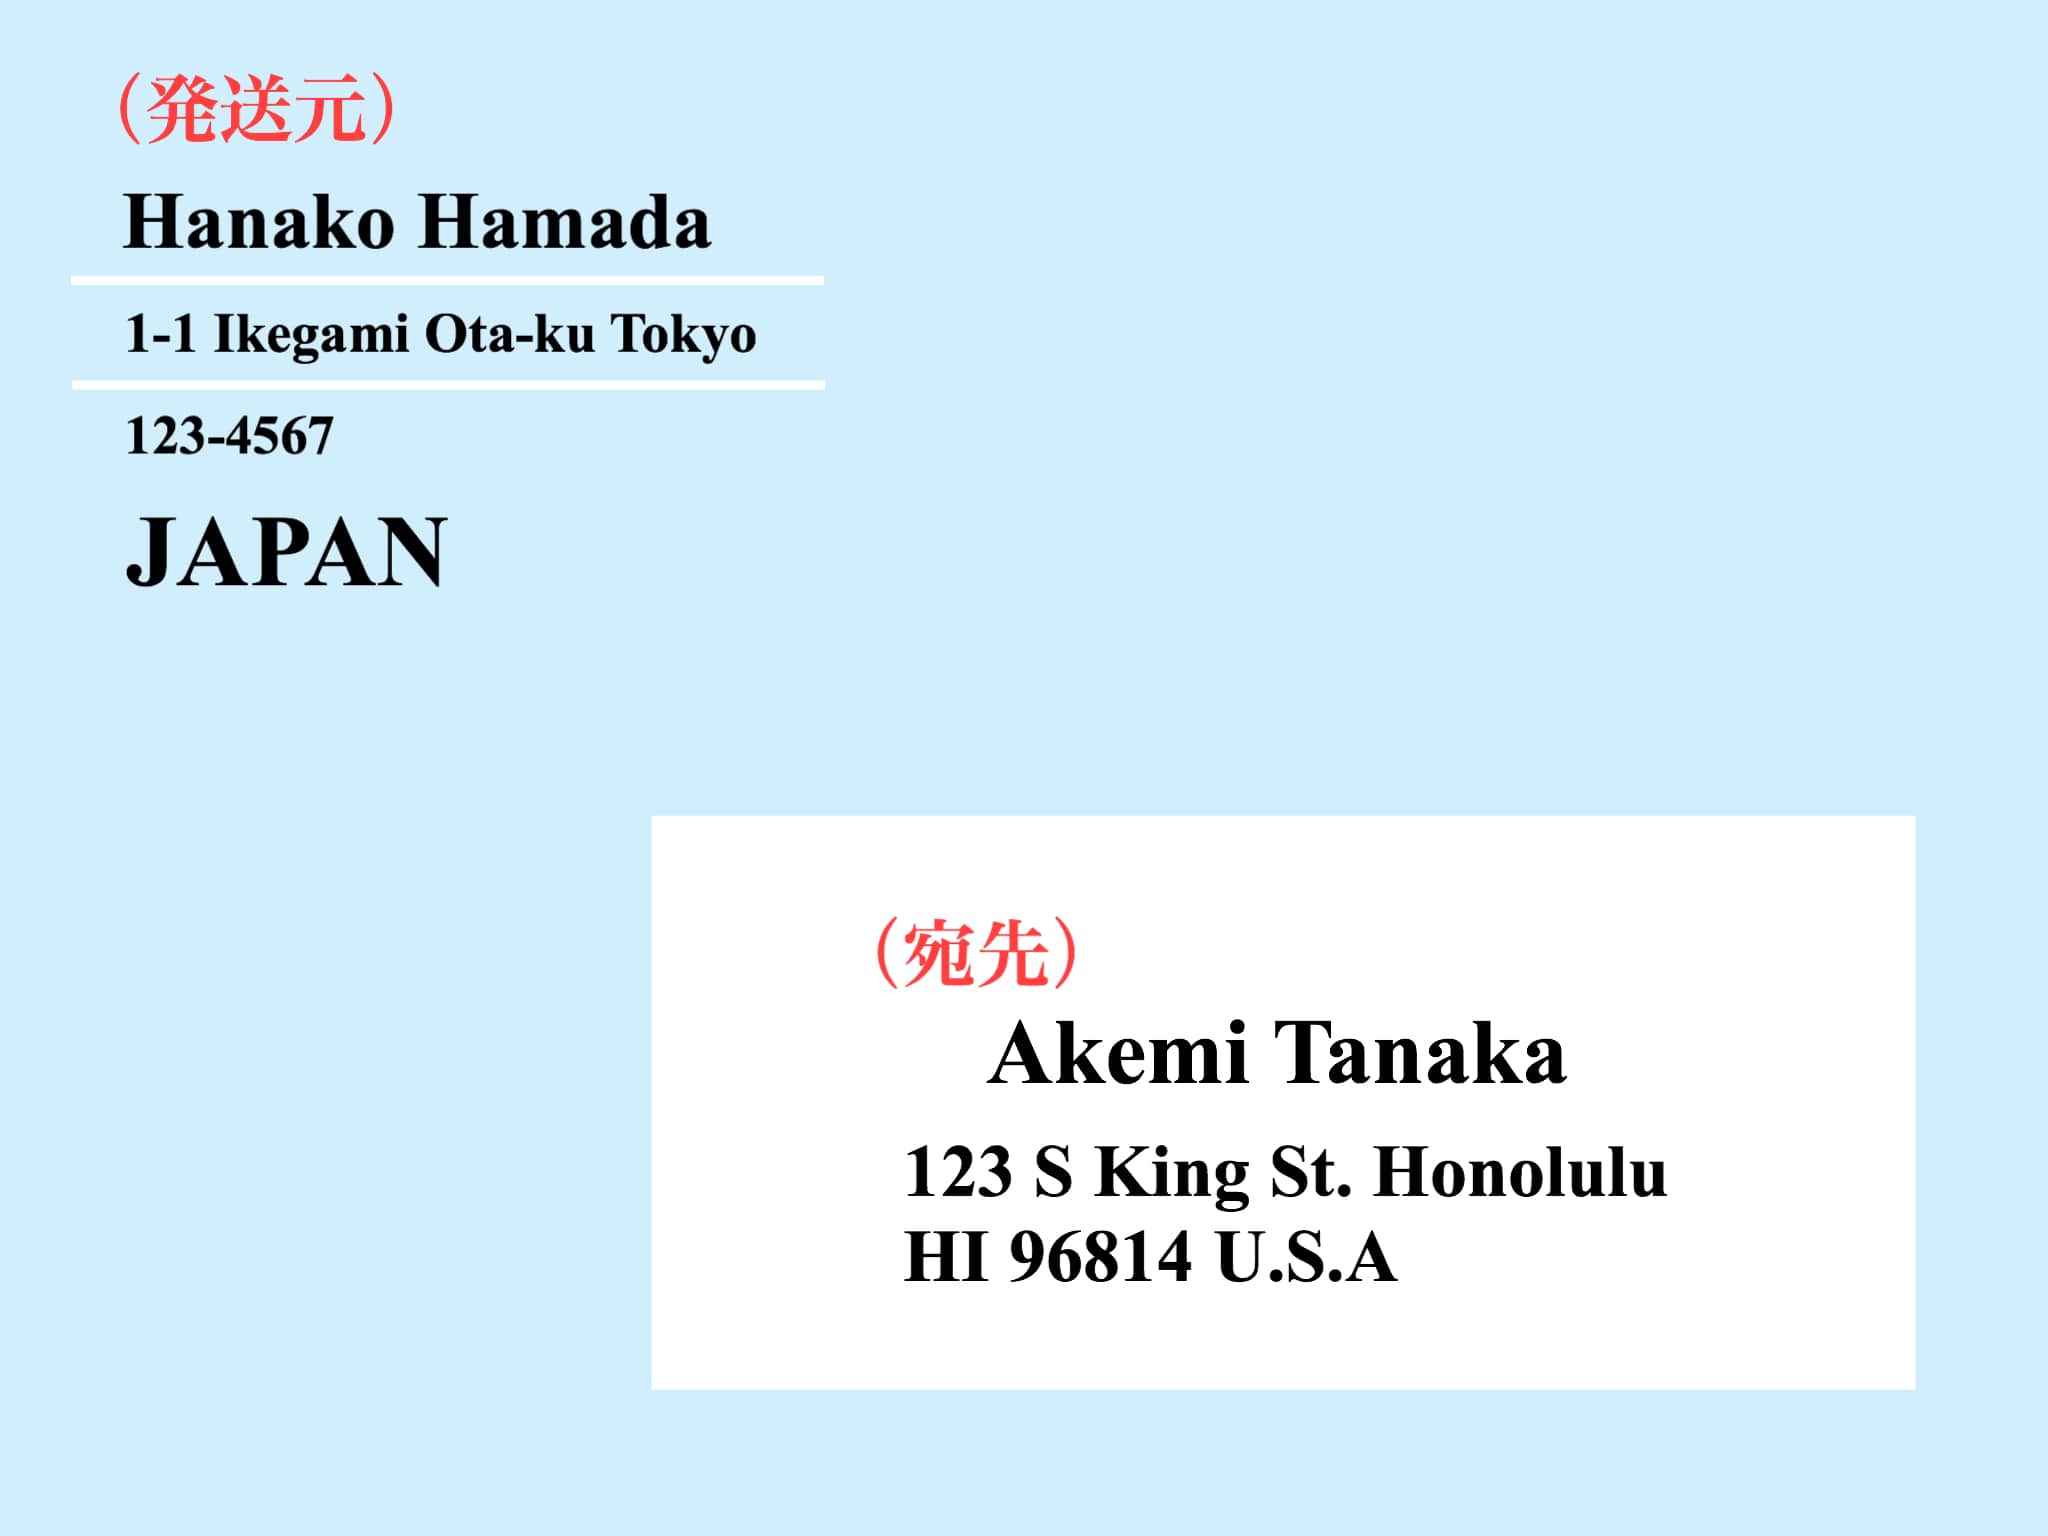 英語での住所の書き方 日本の住所を英語に変換する場合は 蒼井アオの英語ブログ